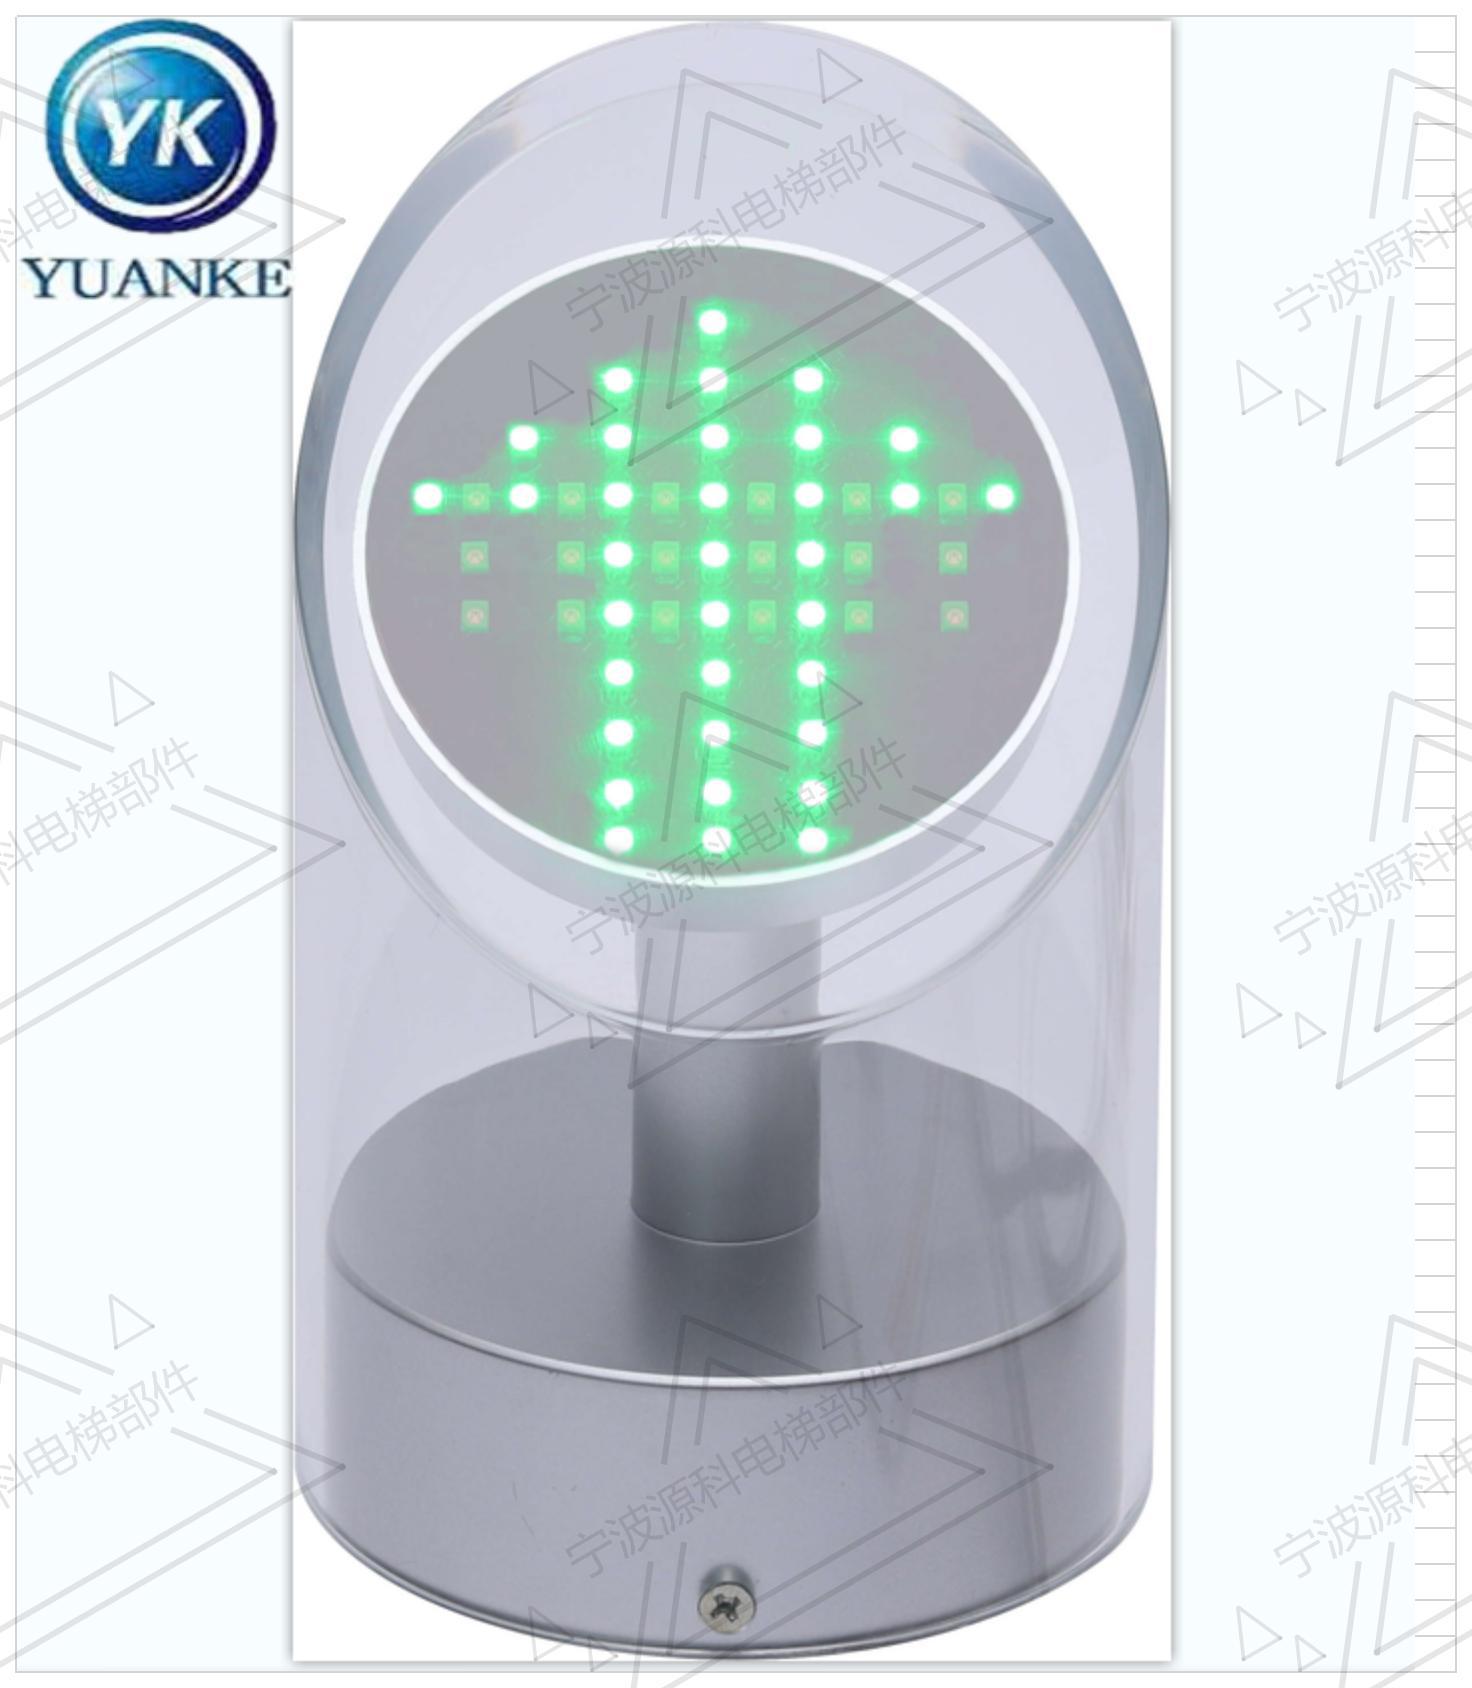 厂家供应扶梯指示灯 运行指示器 交通流量灯 信号灯  YK-LED-02|ru